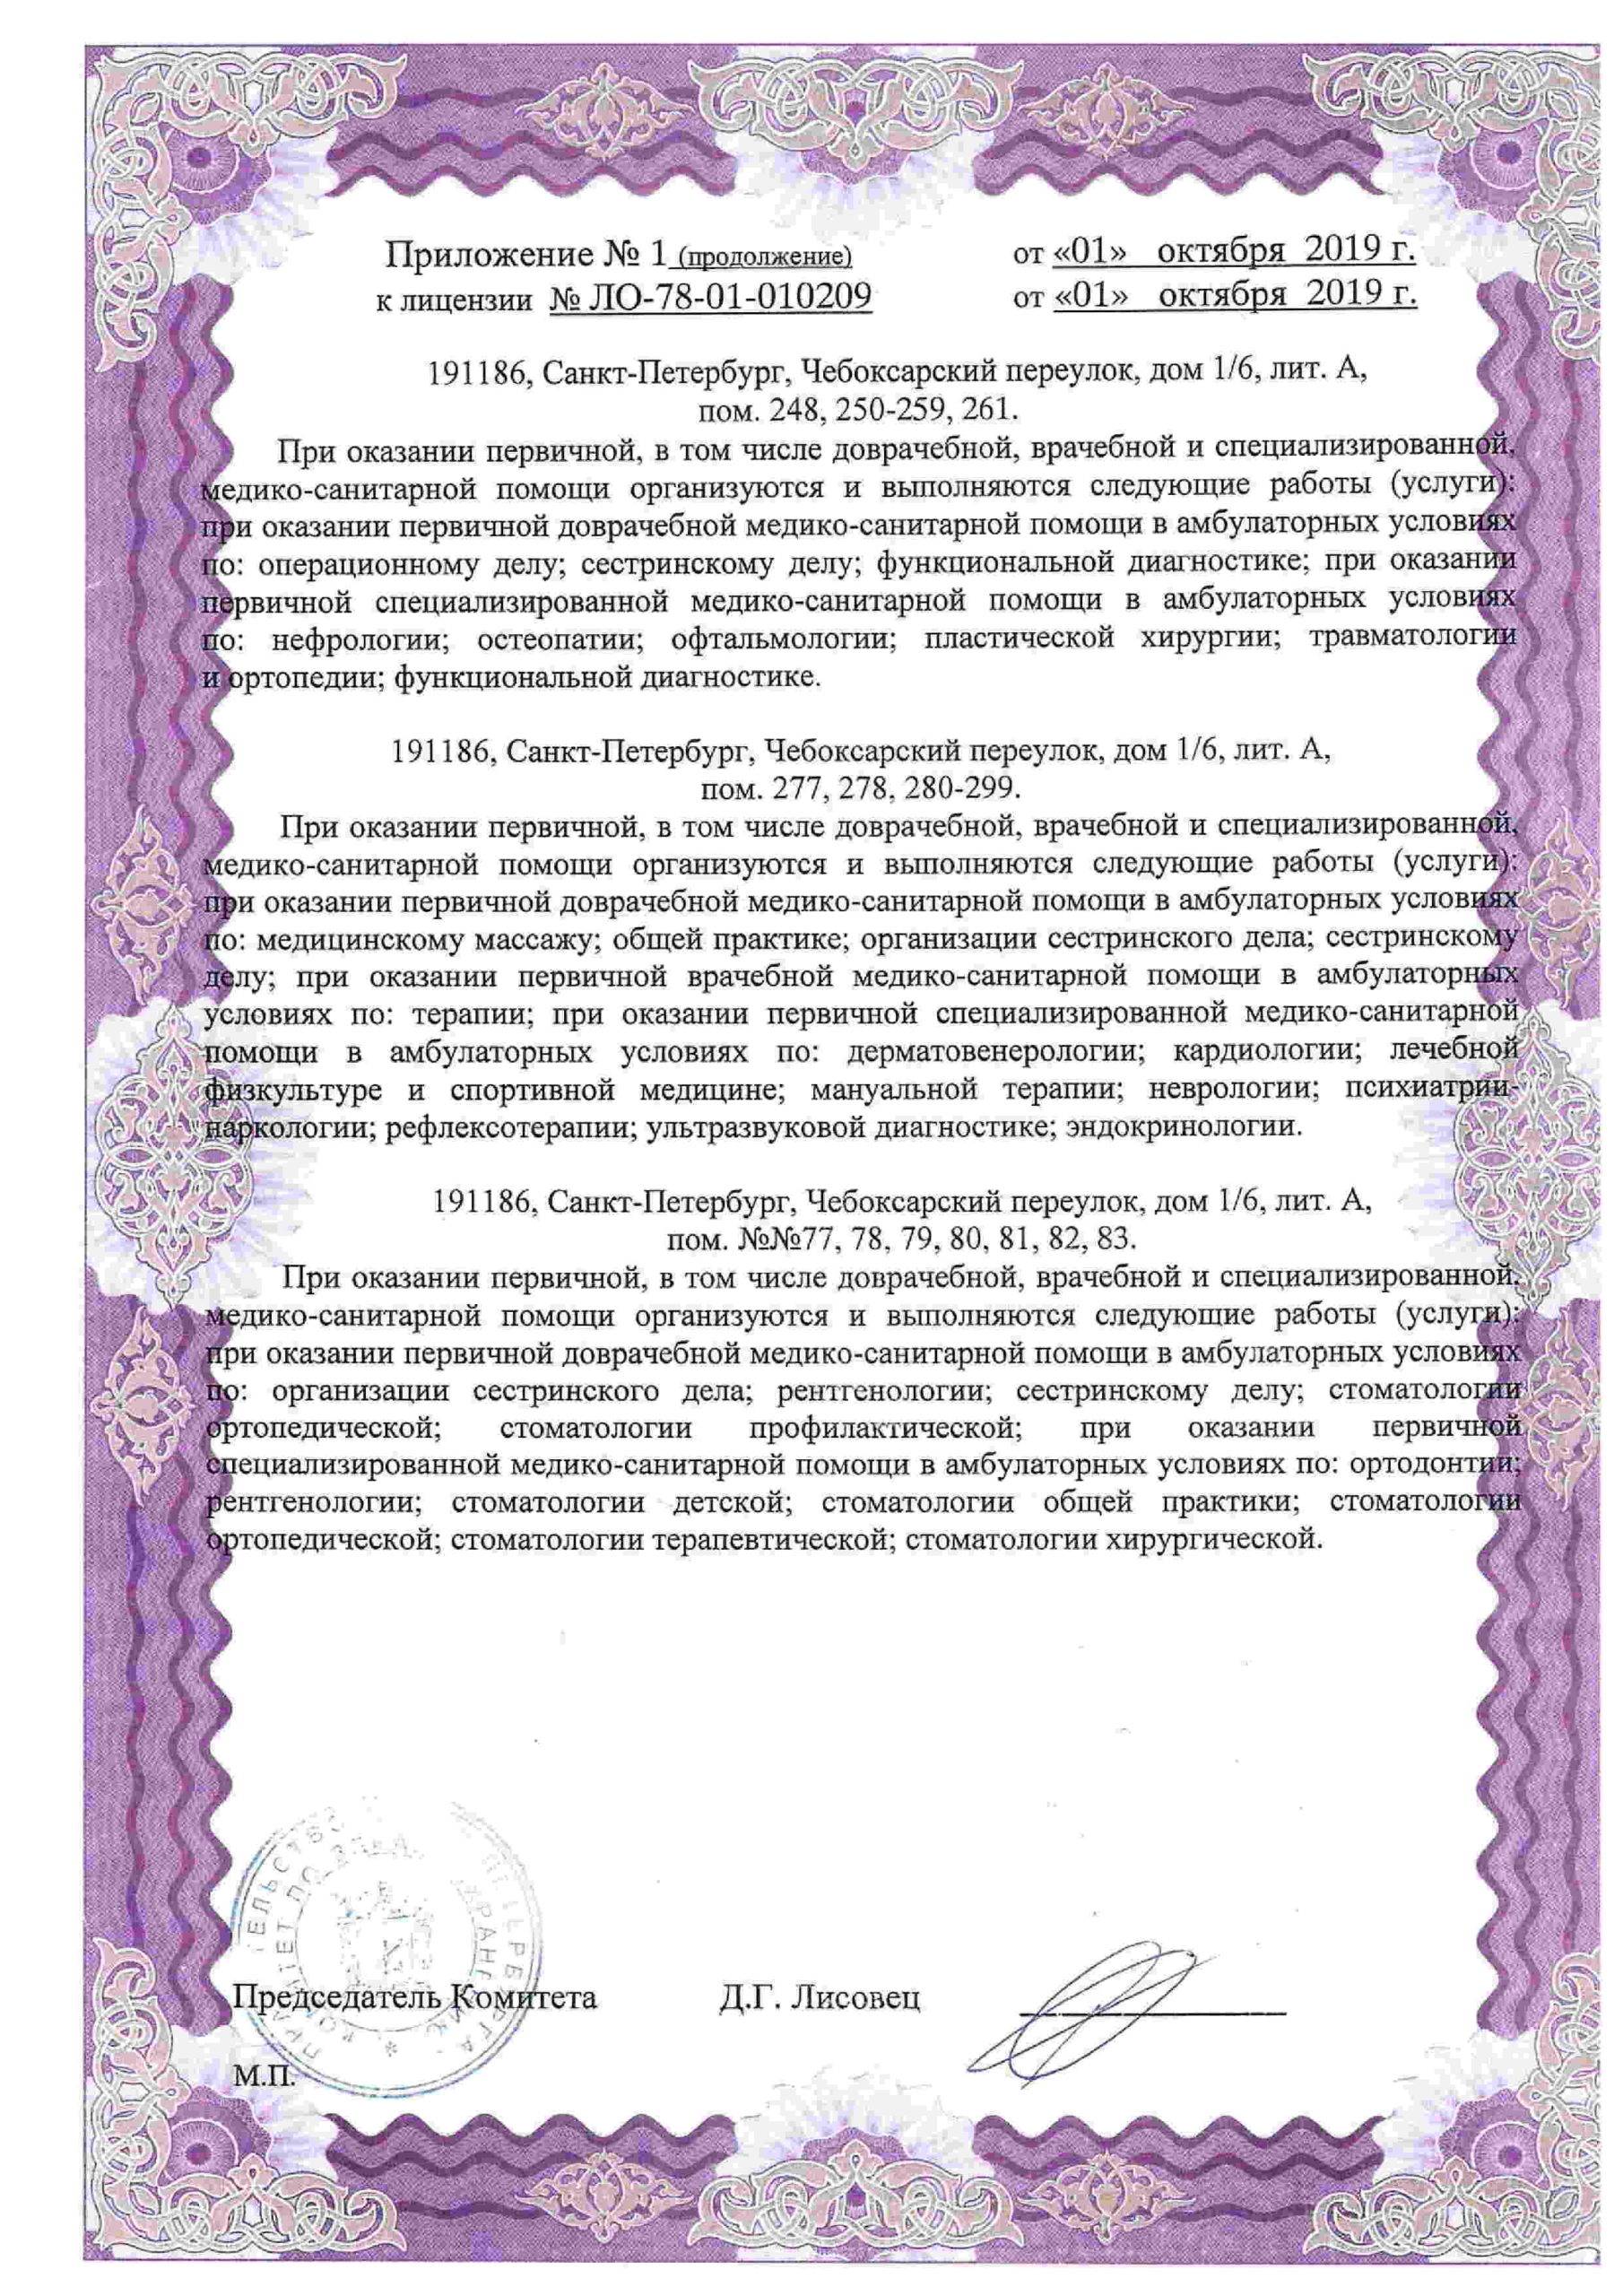 Международный медицинский центр СОГАЗ корпоратив лицензия №4